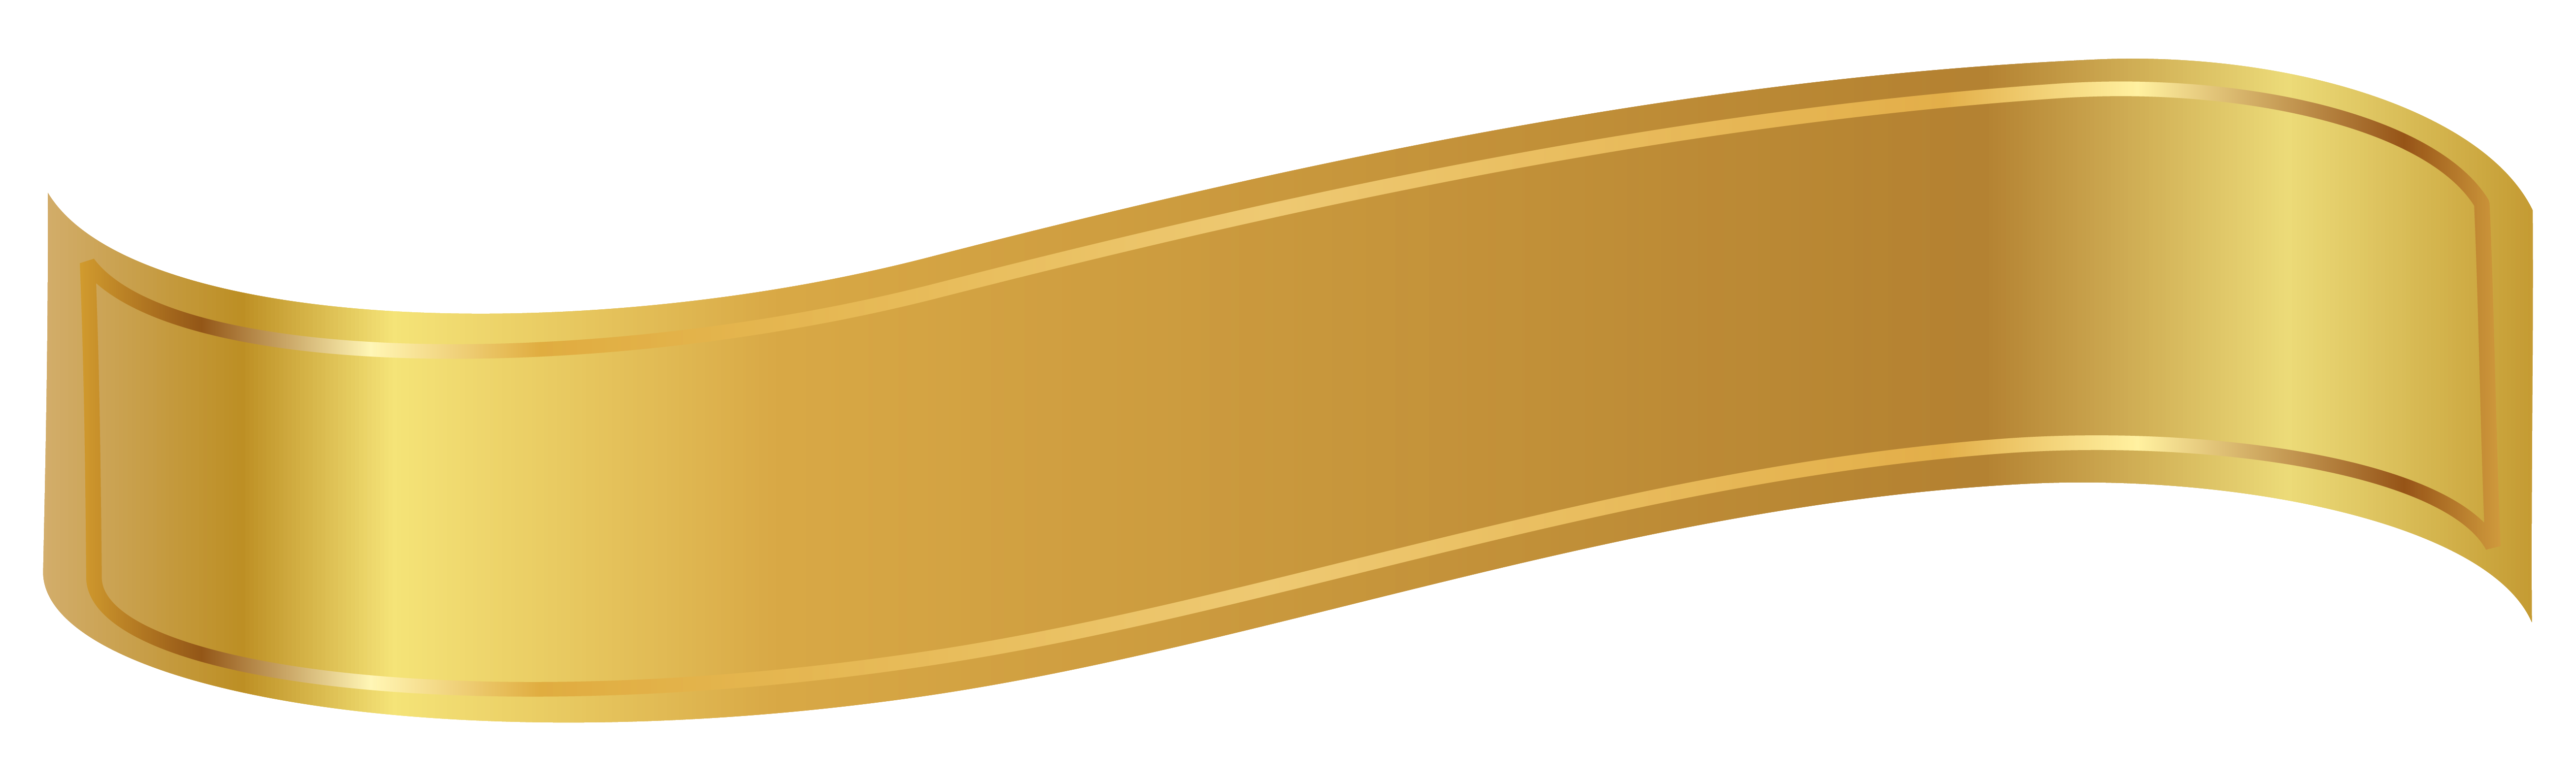 Elegant Gold Ribbon PNG Images